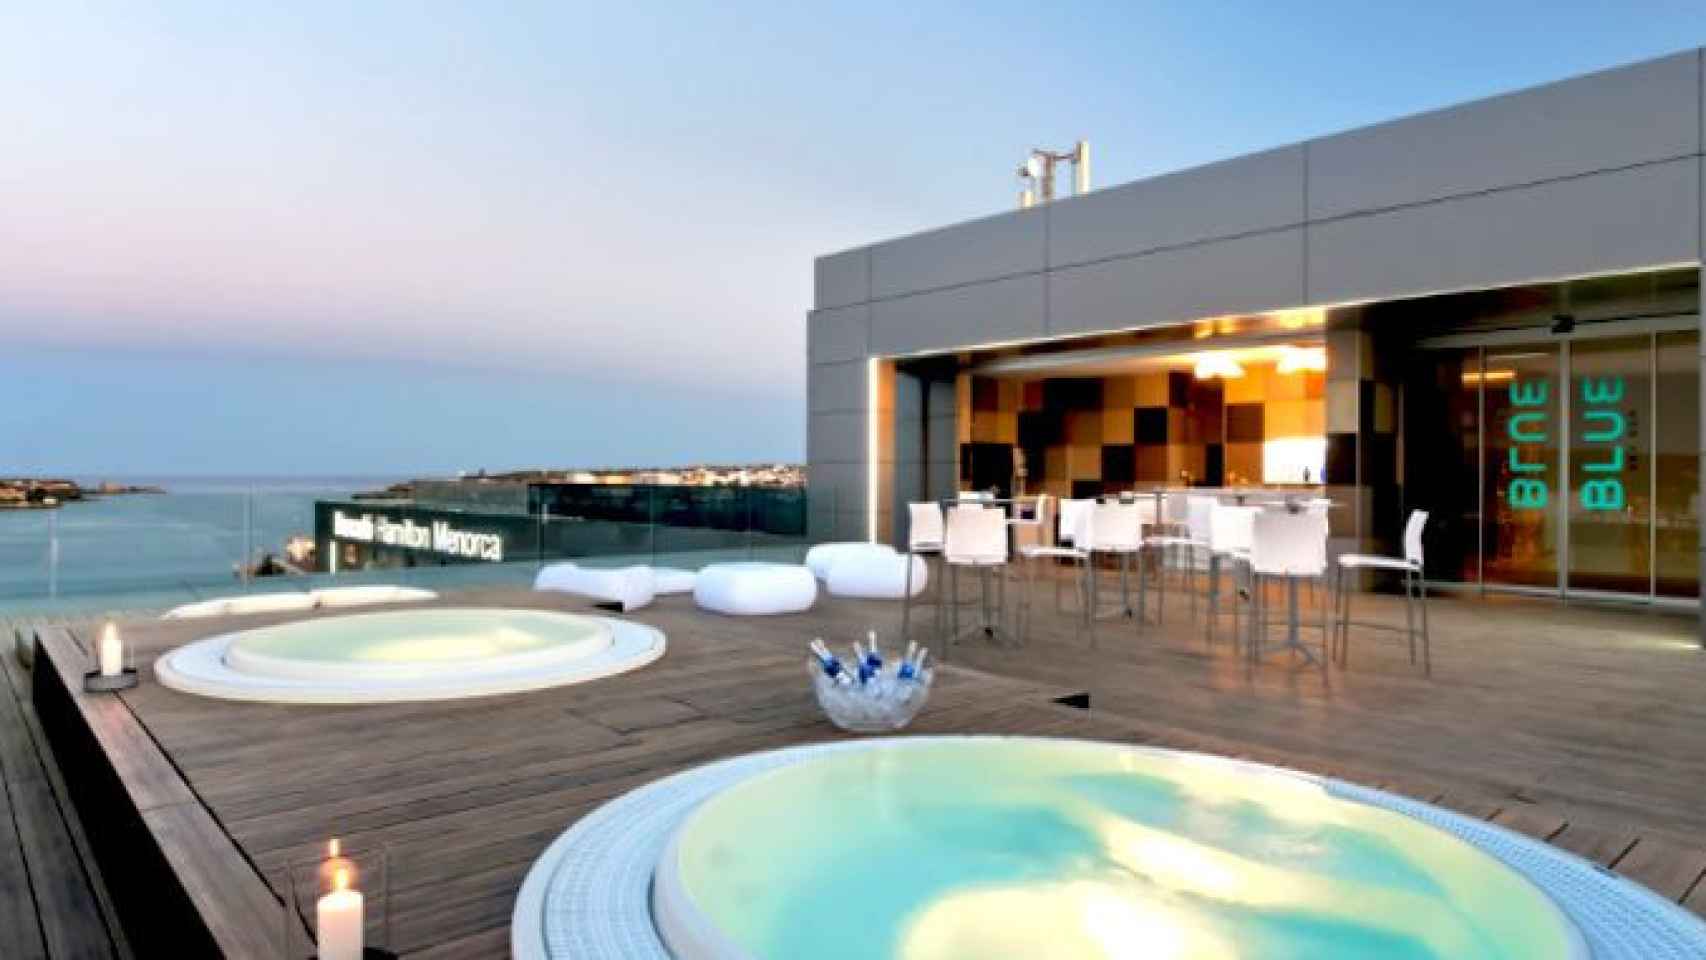 Uno de los hoteles de Hispania en Menorca, los activos que el fondo Blackstone se quiere quedar al lanzar una OPA / HISPANIA